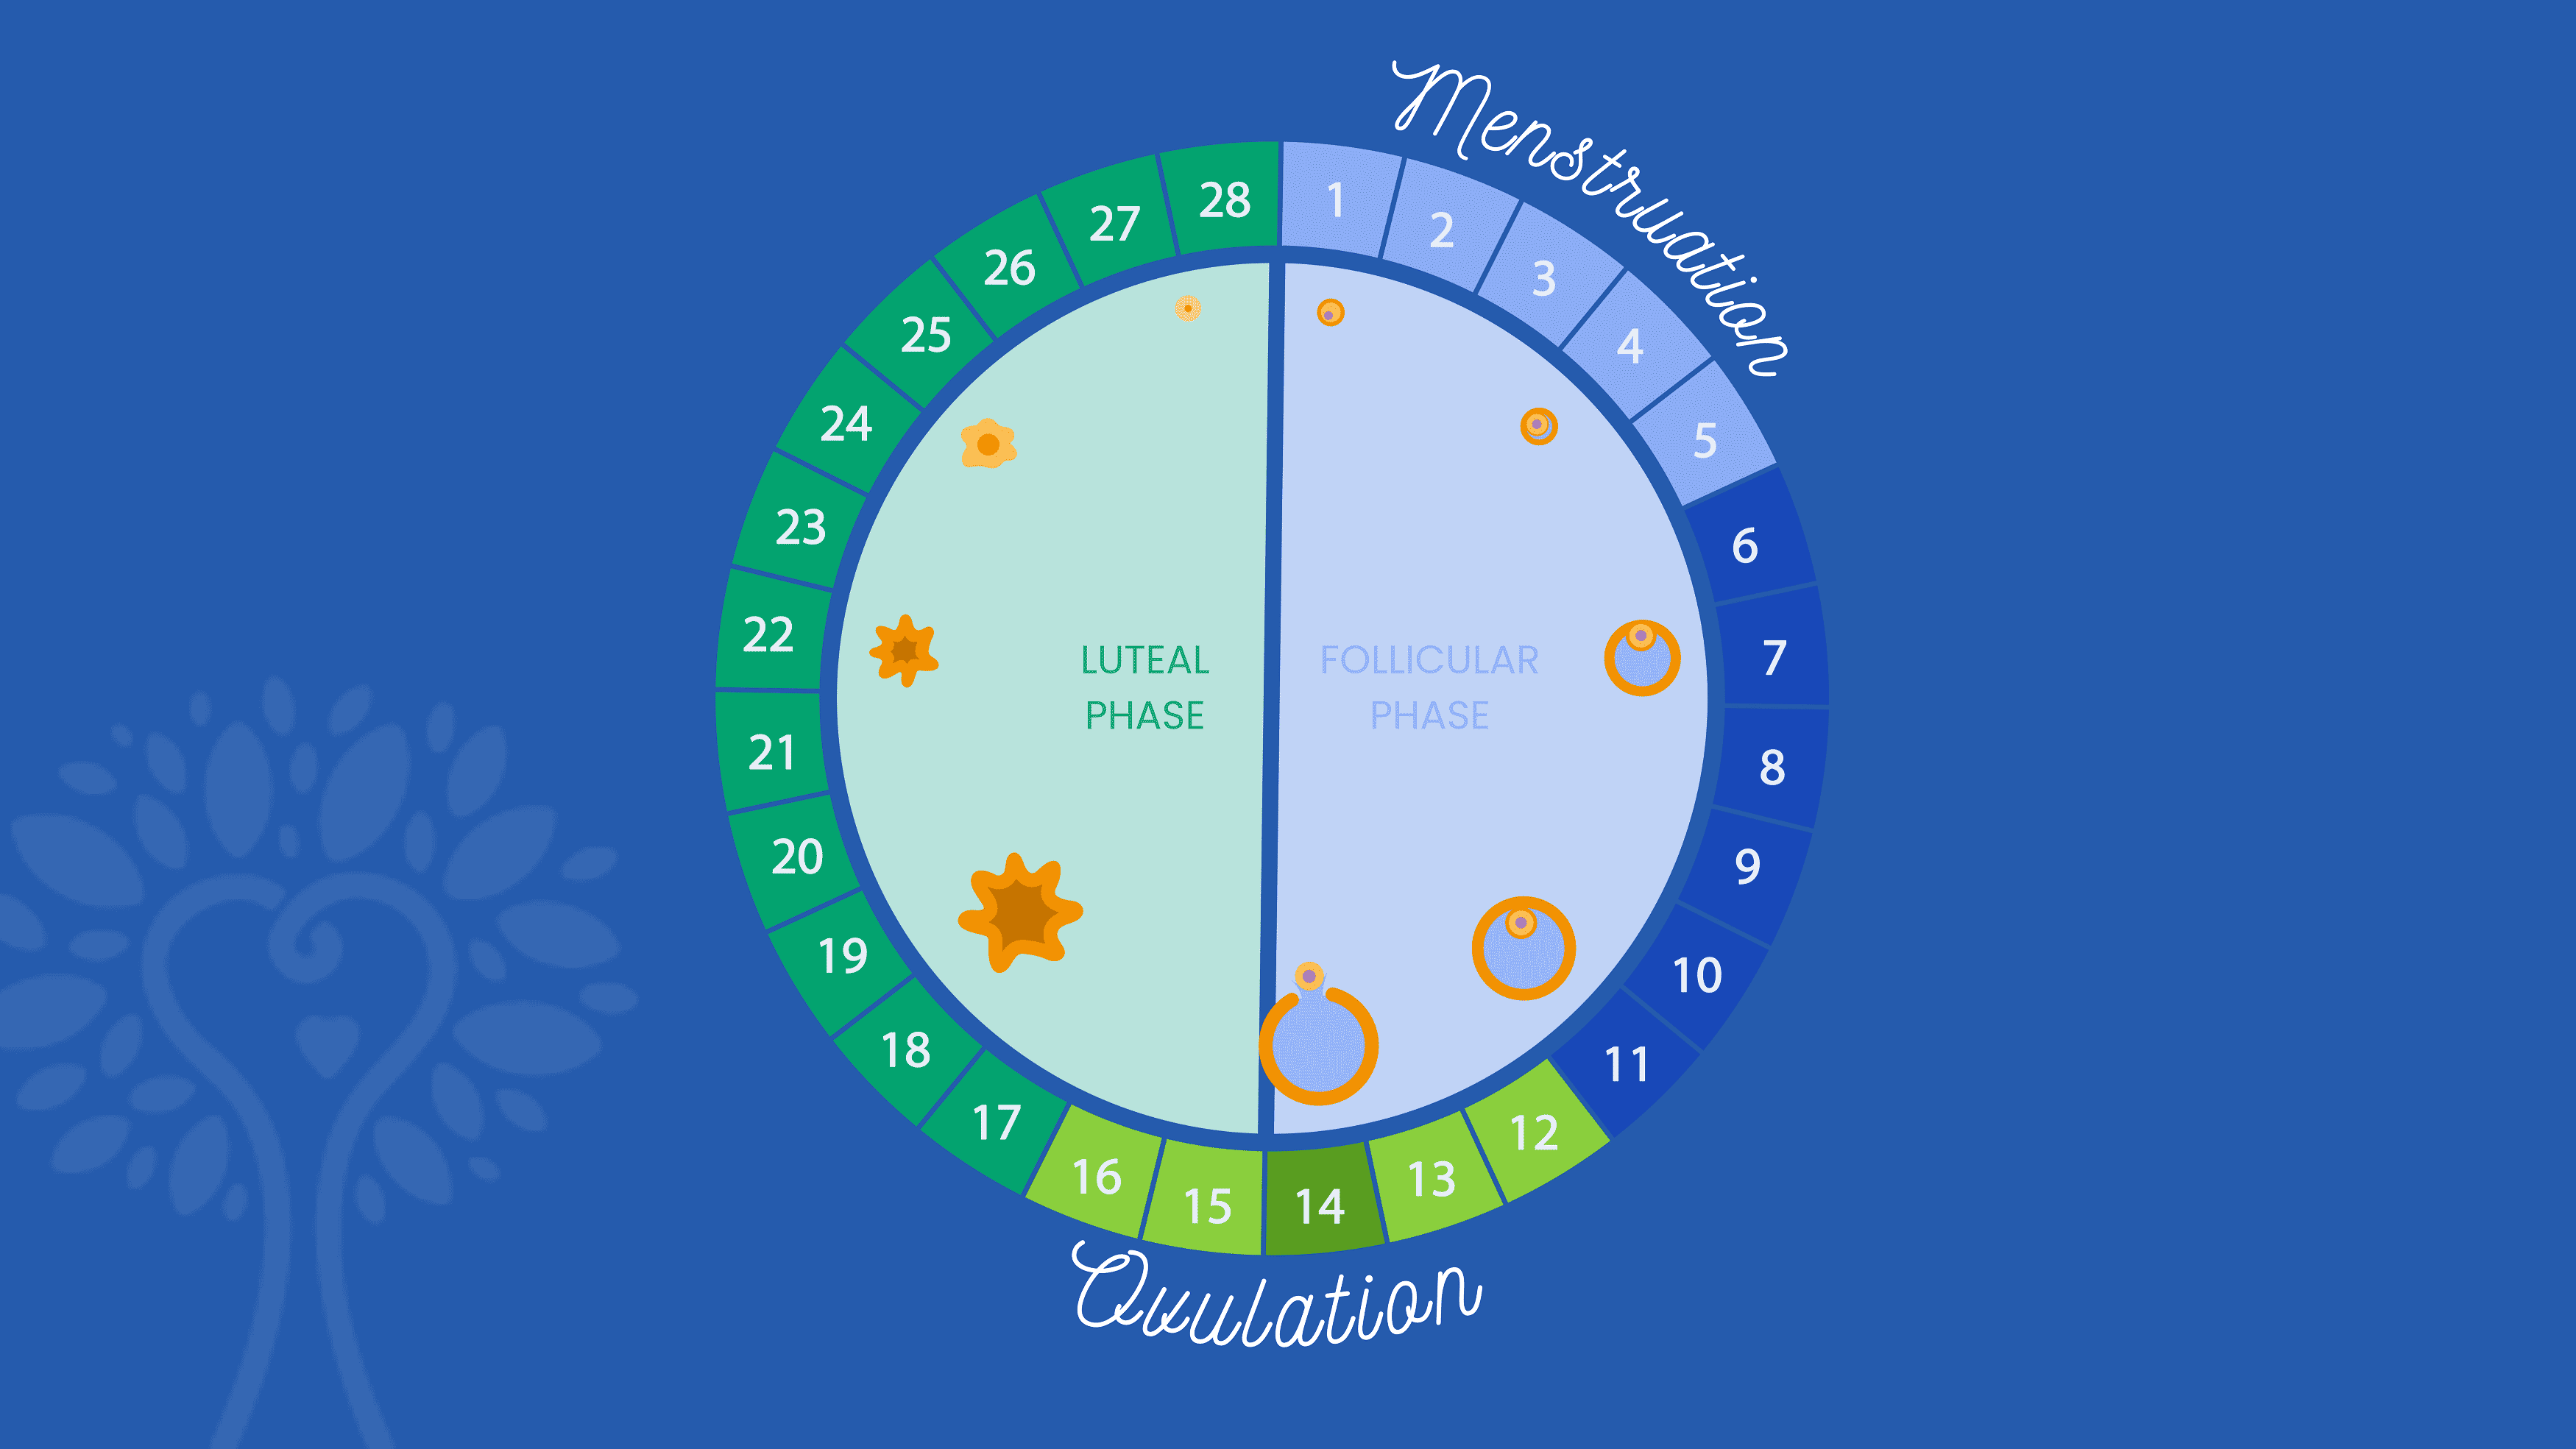 Fond bleu foncé avec un calendrier circulaire de FIV montrant les 28 jours d'un cycle menstruel avec le mot « Menstruation » s'étendant sur les jours 1 à 5 et le mot « Ovulation » s'étendant sur les jours 12 à 16. Les chiffres sont colorés dans différentes nuances de bleu et de vert selon leur phase.